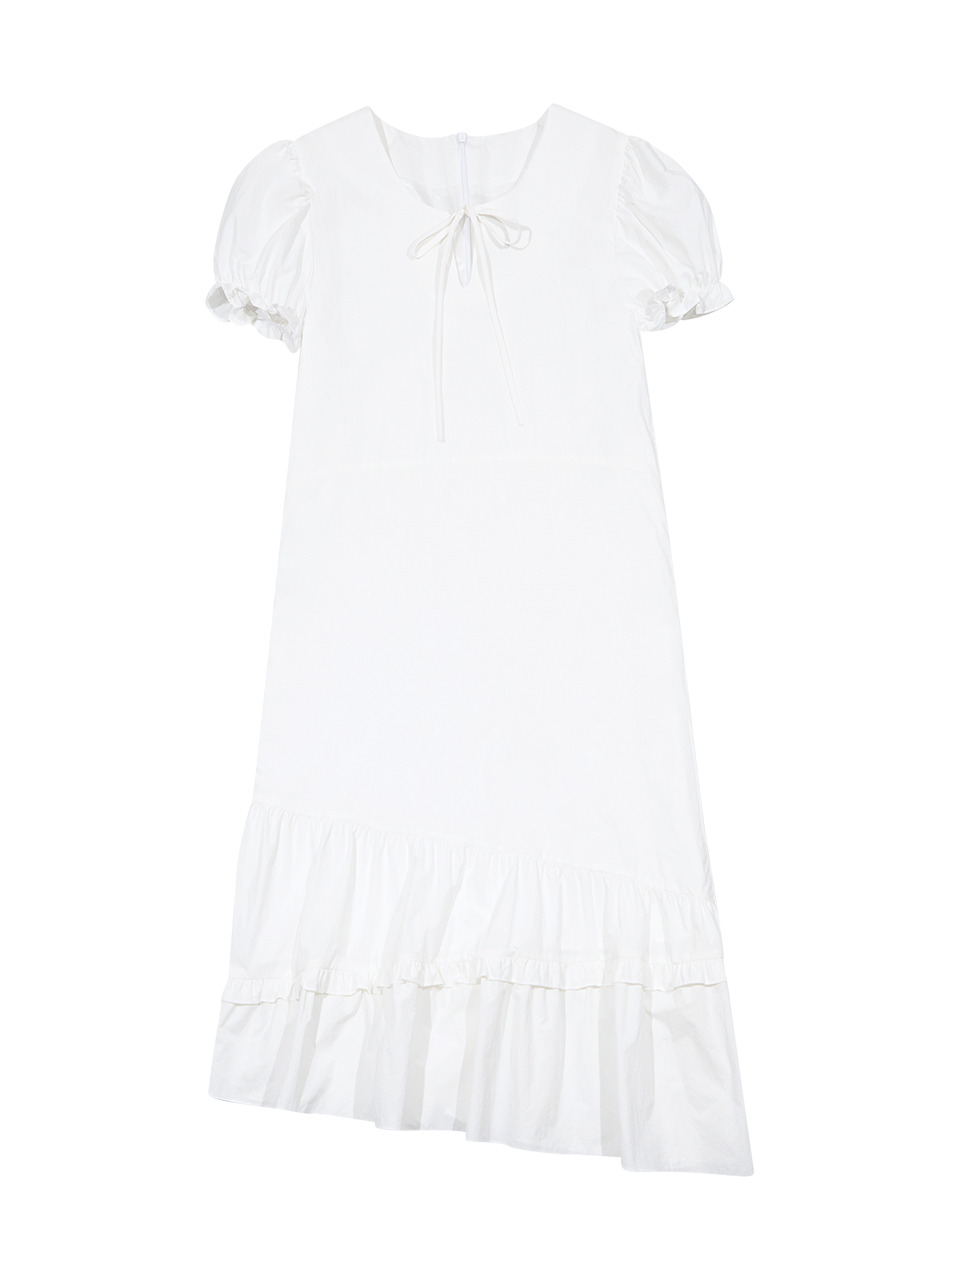 FRILL DETAIL DRESS (WHITE)